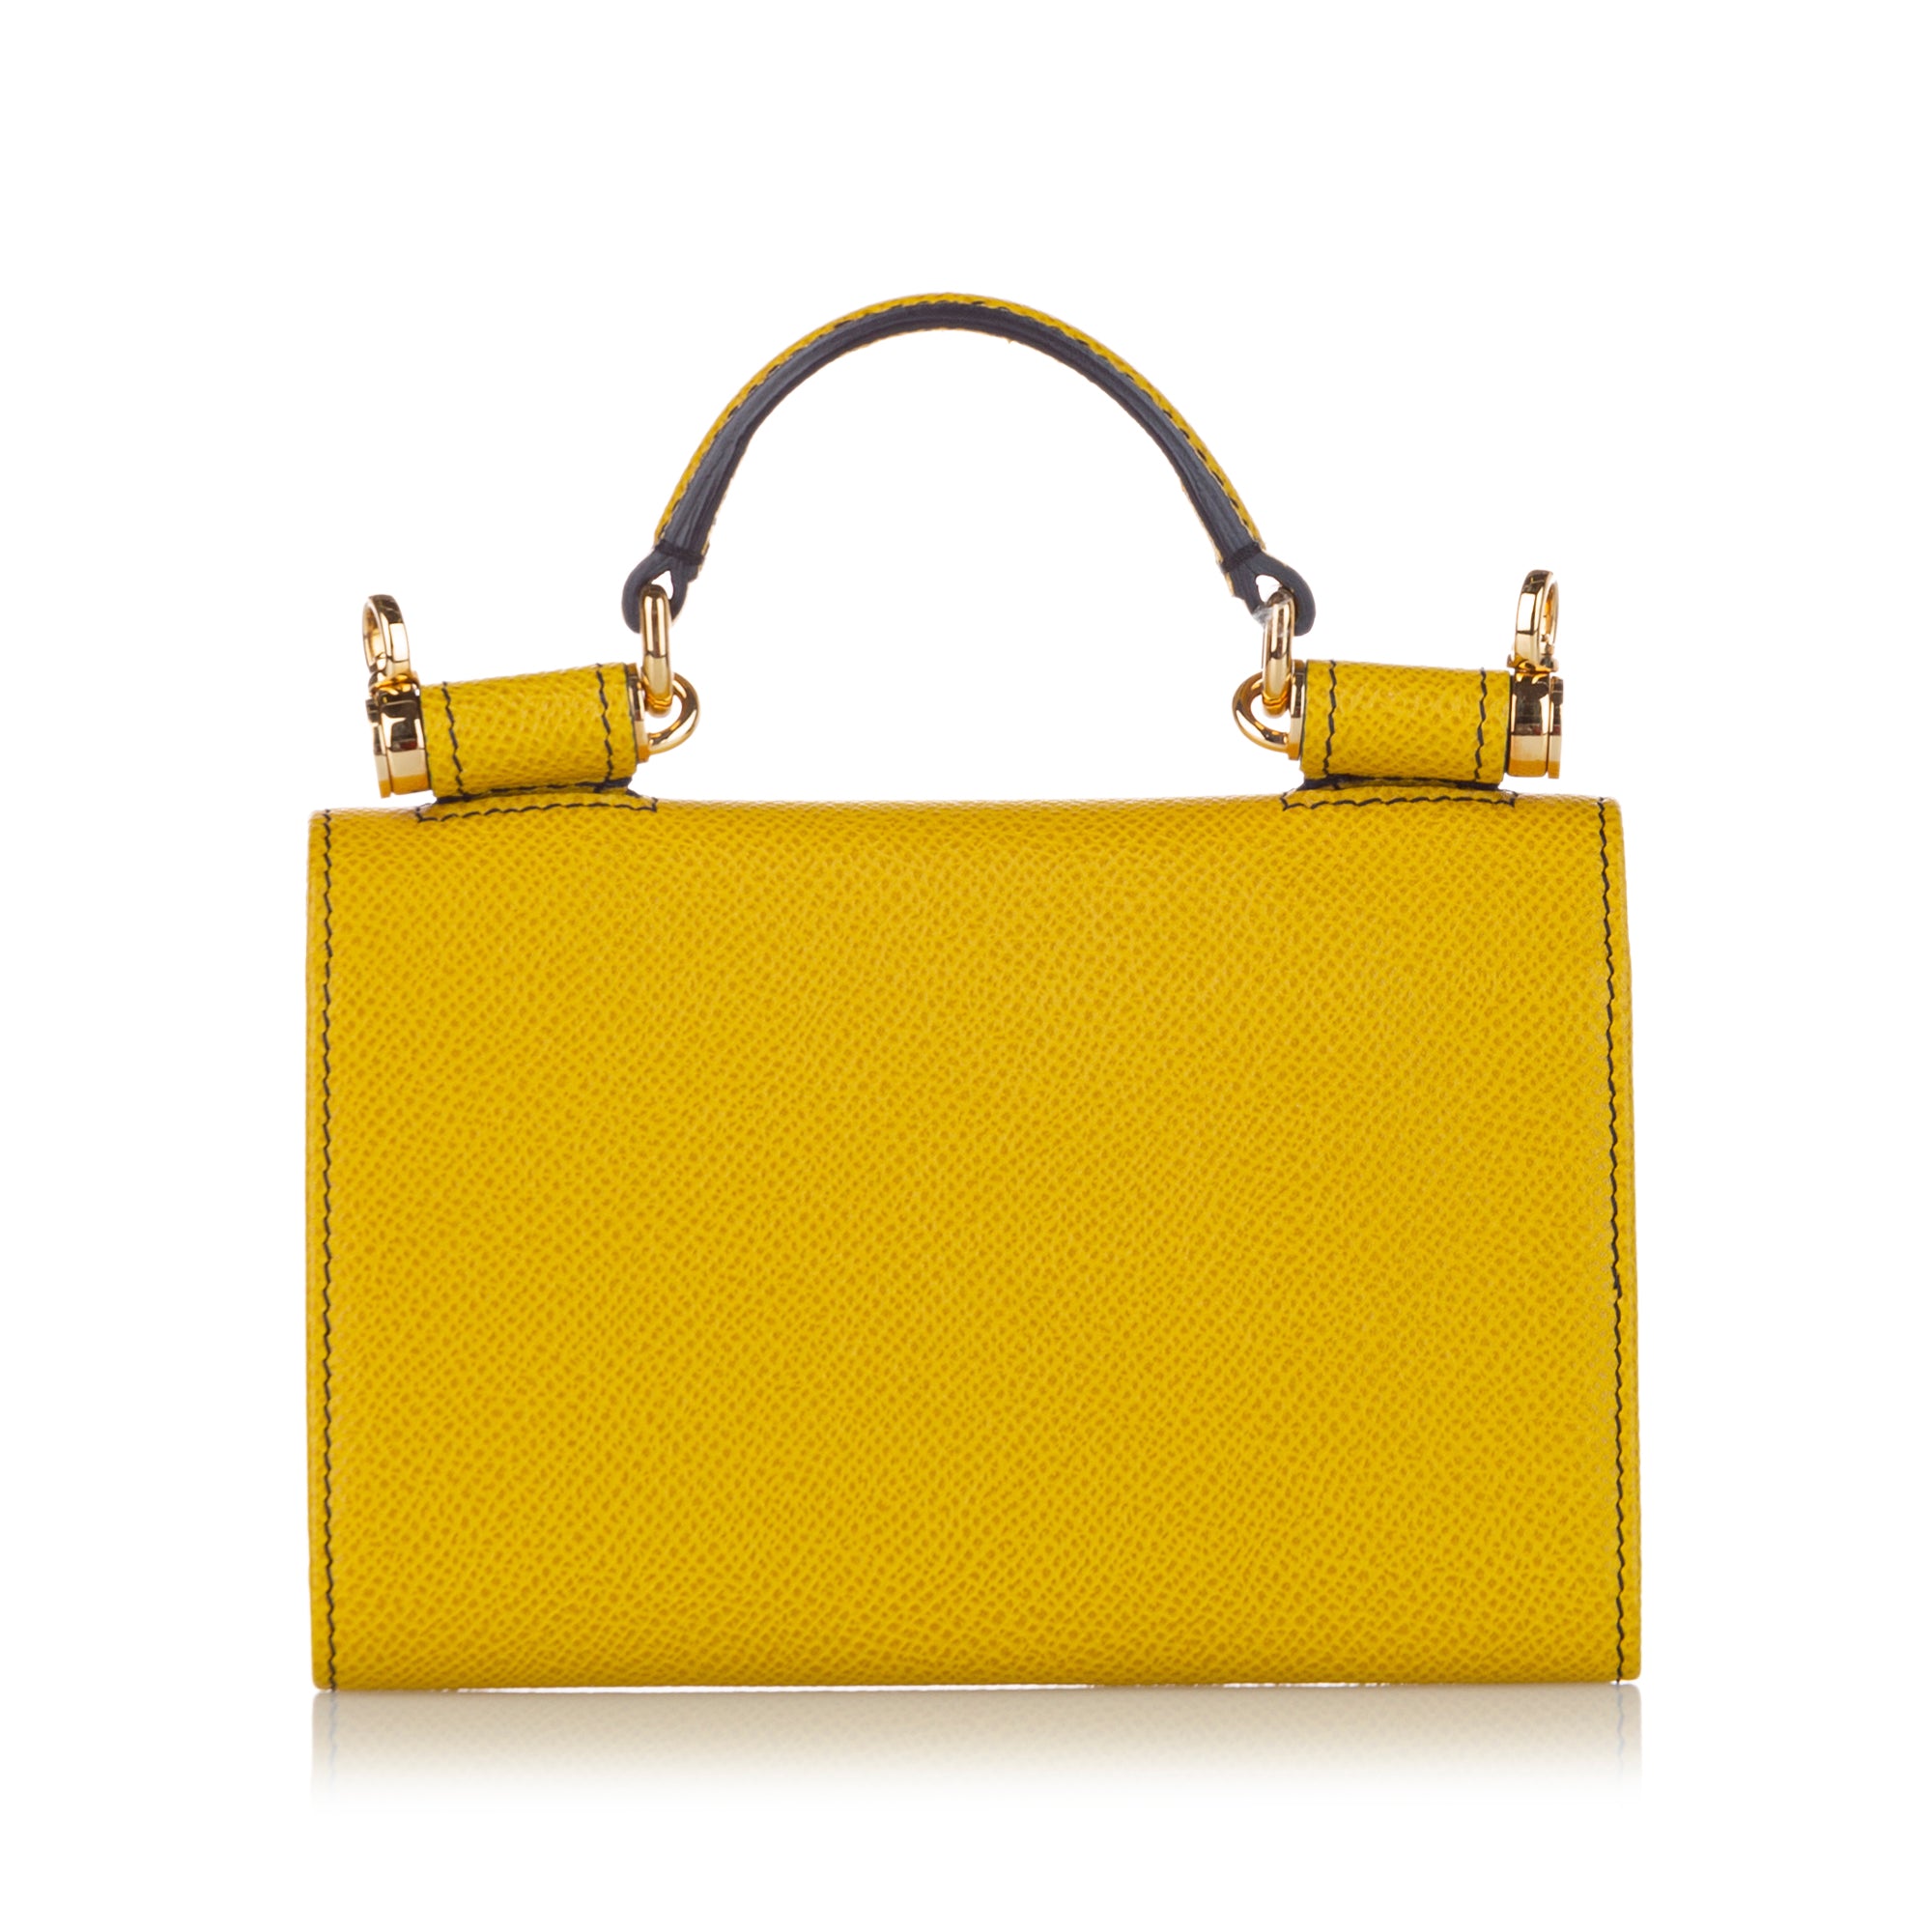 Dolce & Gabbana Mini 'sicily' Tote in Yellow